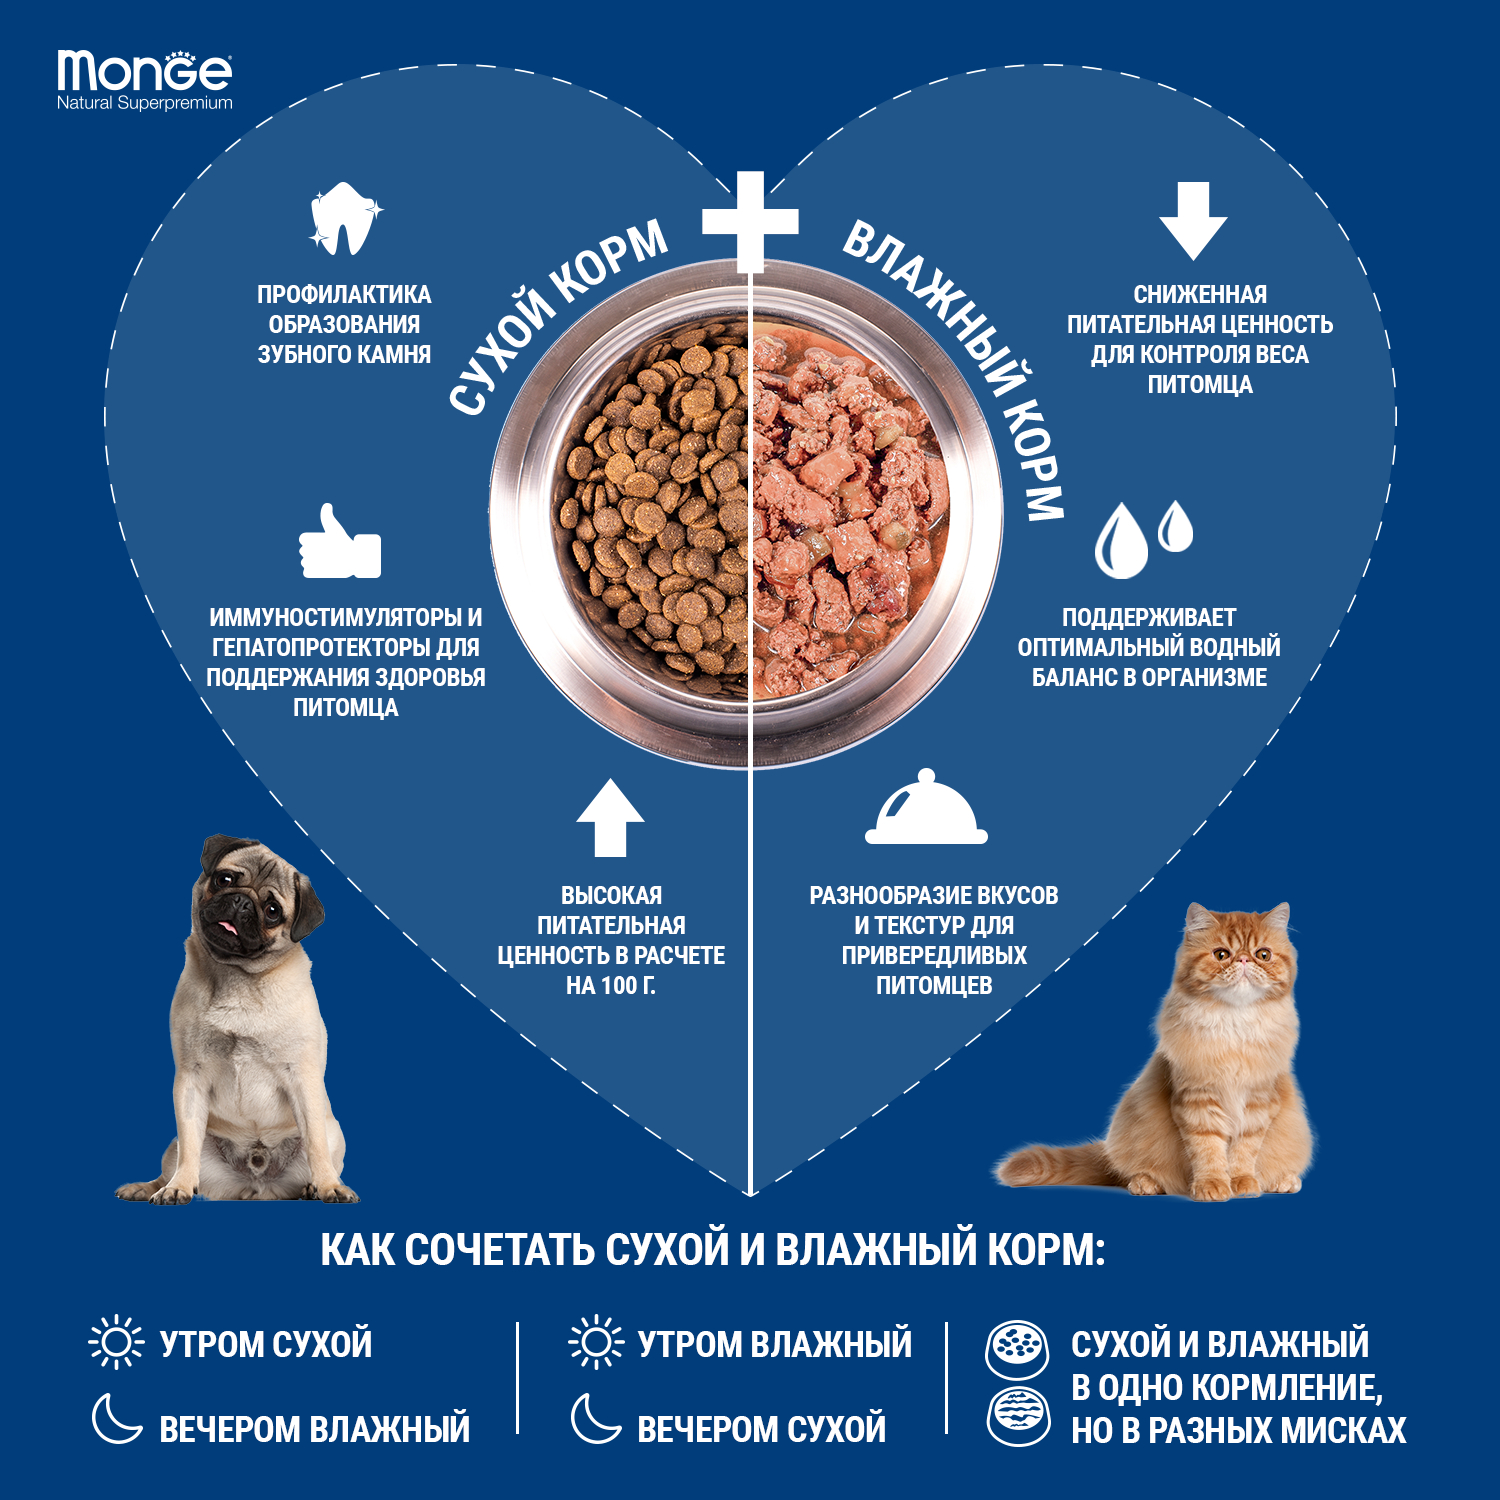 Сухой корм Monge Cat Daily Line Urinary для кошек, для профилактики МКБ, с курицей 400 г